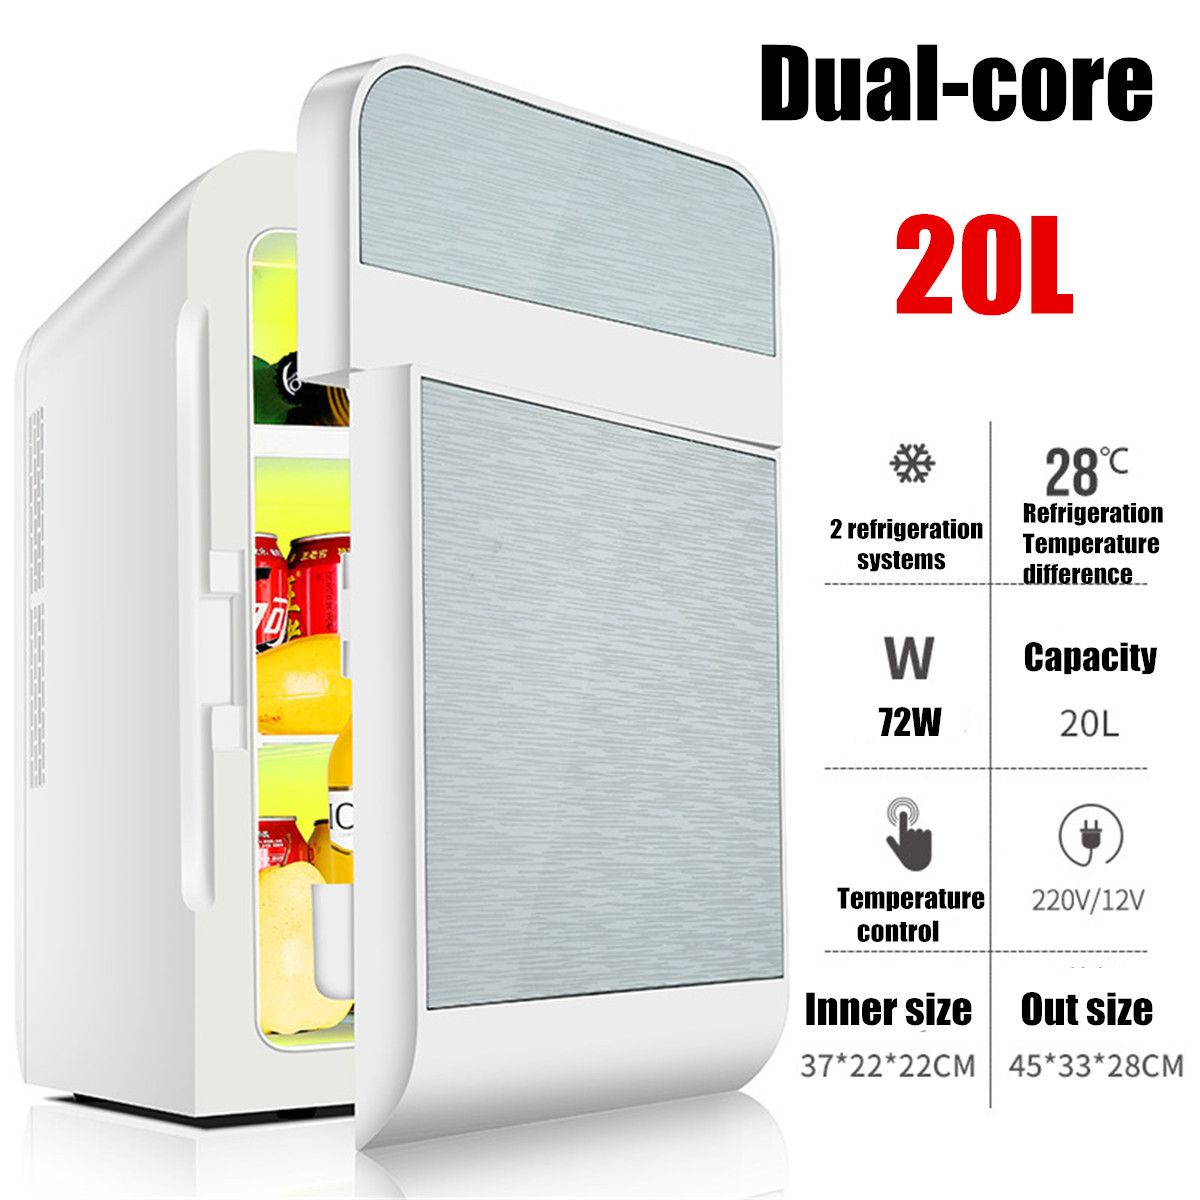 20L-Single-Dual-core-Car-Mini-Fridge-Travel-Cool--Warmer-Home-Refrigerator-220V12V-1520135